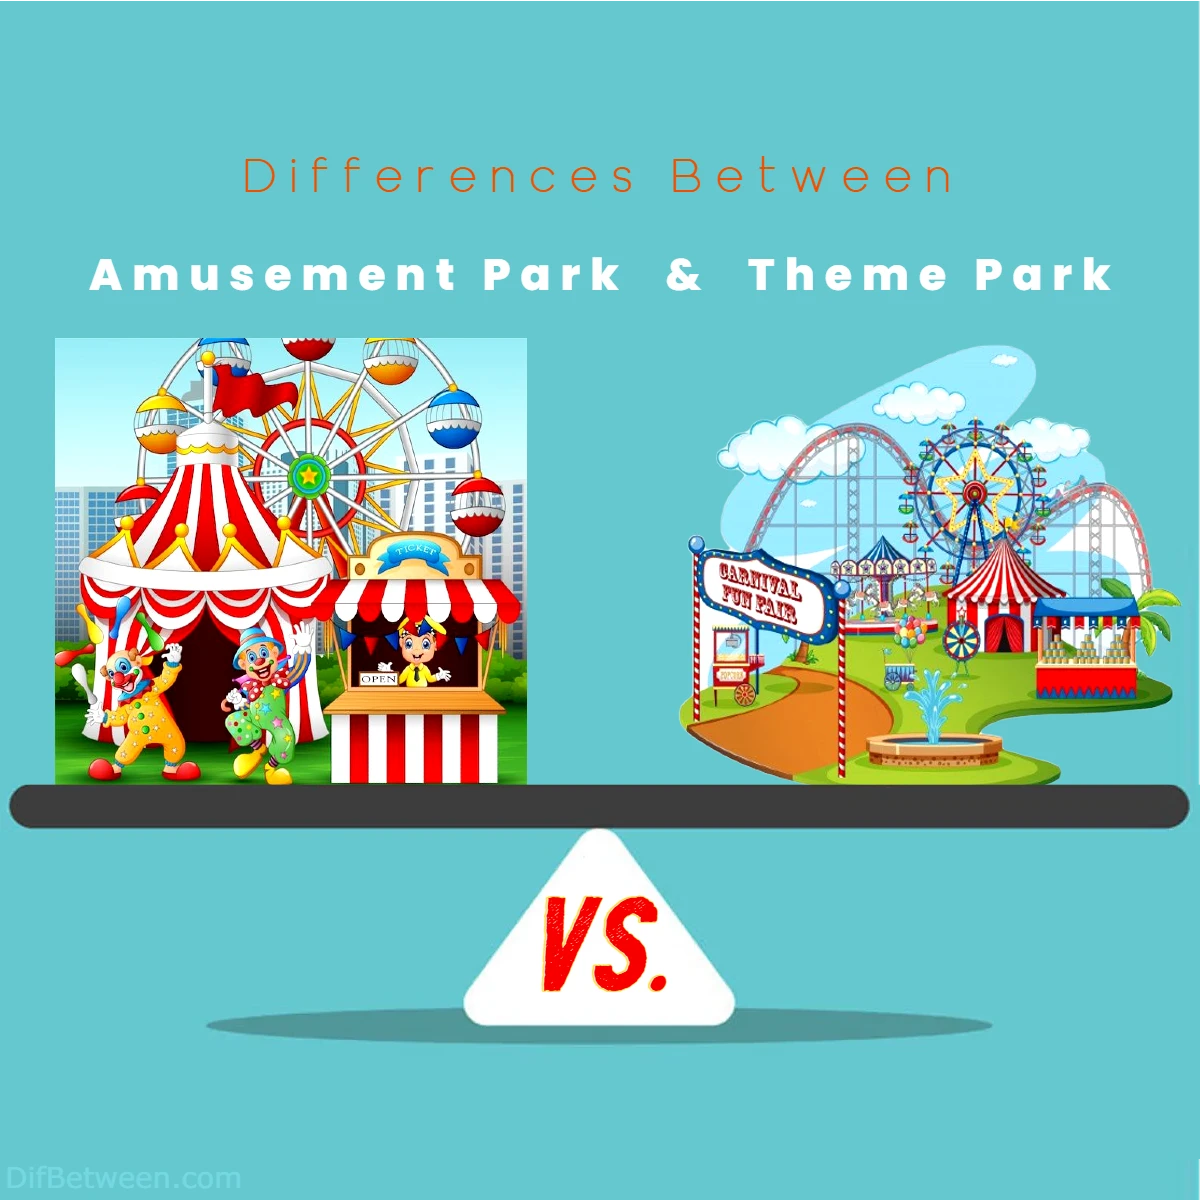 Differences Between Amusement Park vs Theme Park